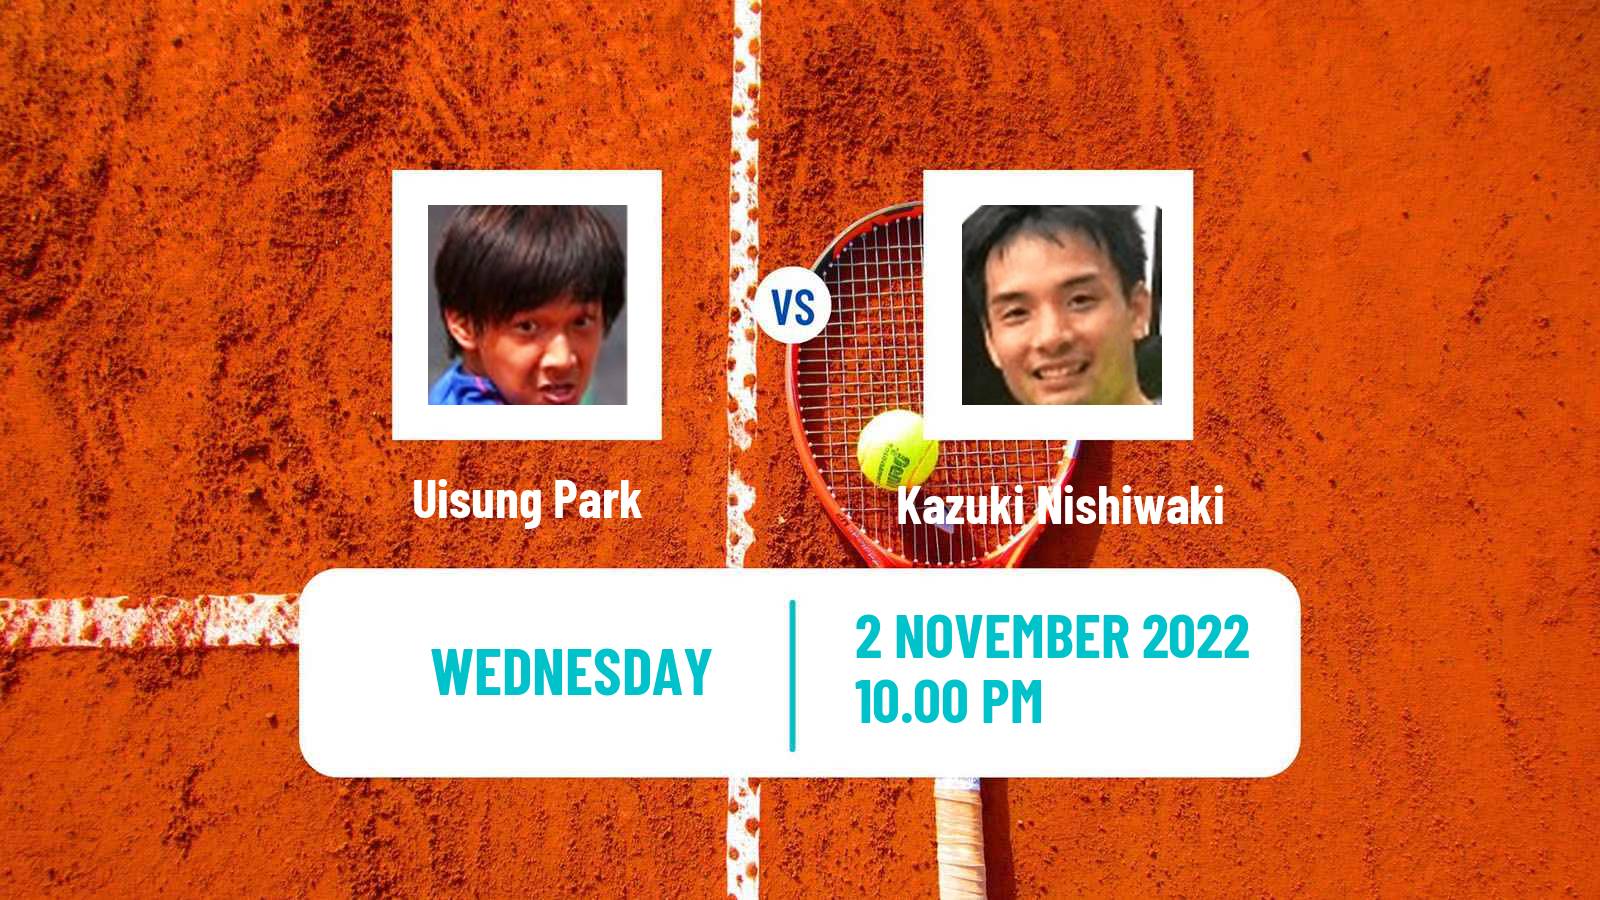 Tennis ITF Tournaments Uisung Park - Kazuki Nishiwaki